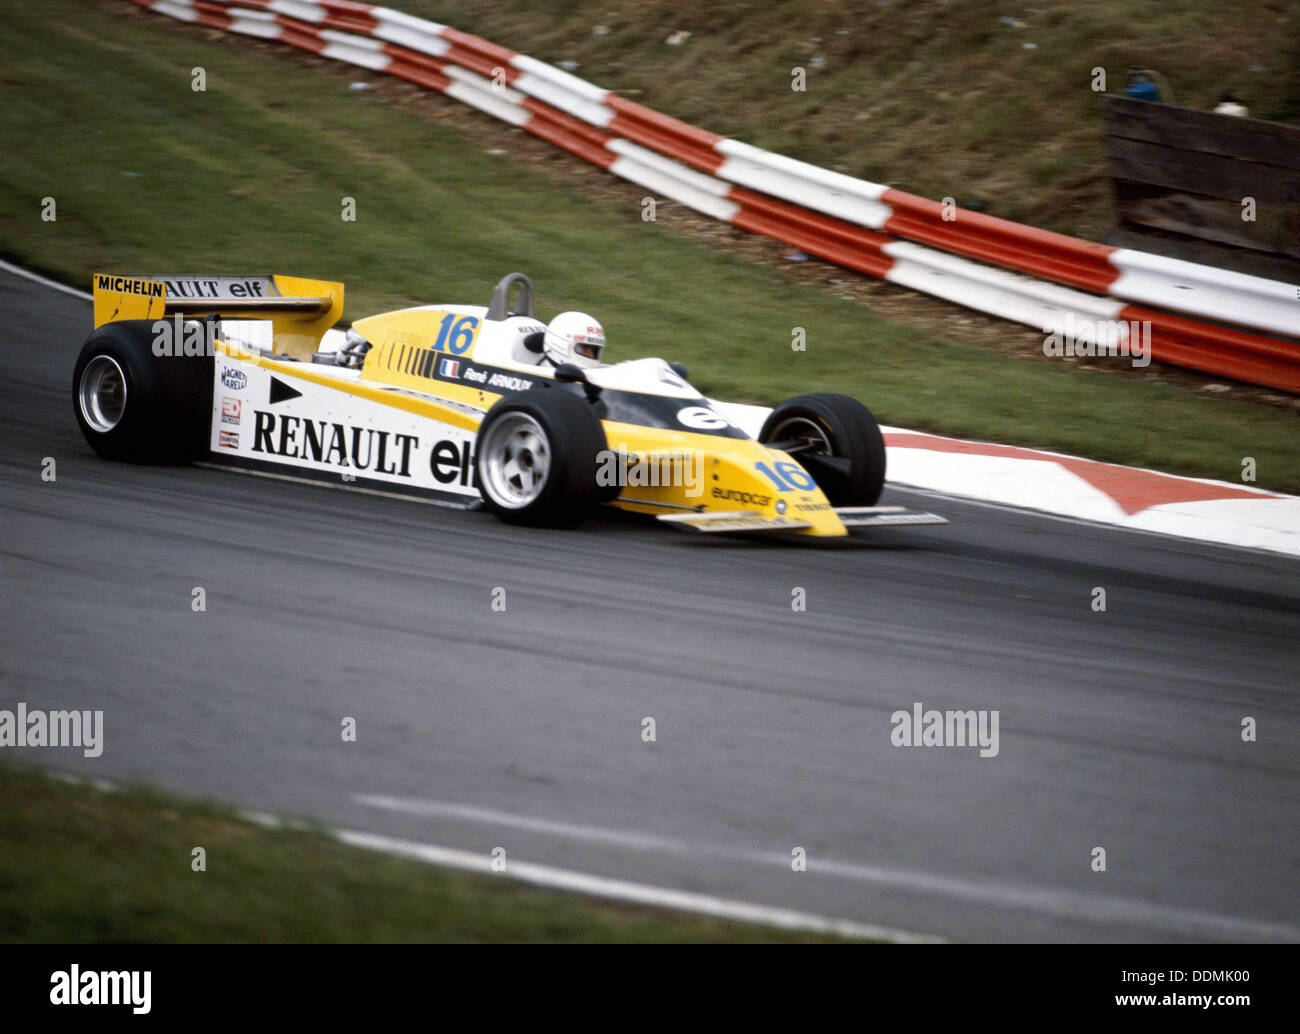 René Arnoux course une Renault RE20, British Grand Prix, Brands Hatch, 1980. Artiste : Inconnu Banque D'Images